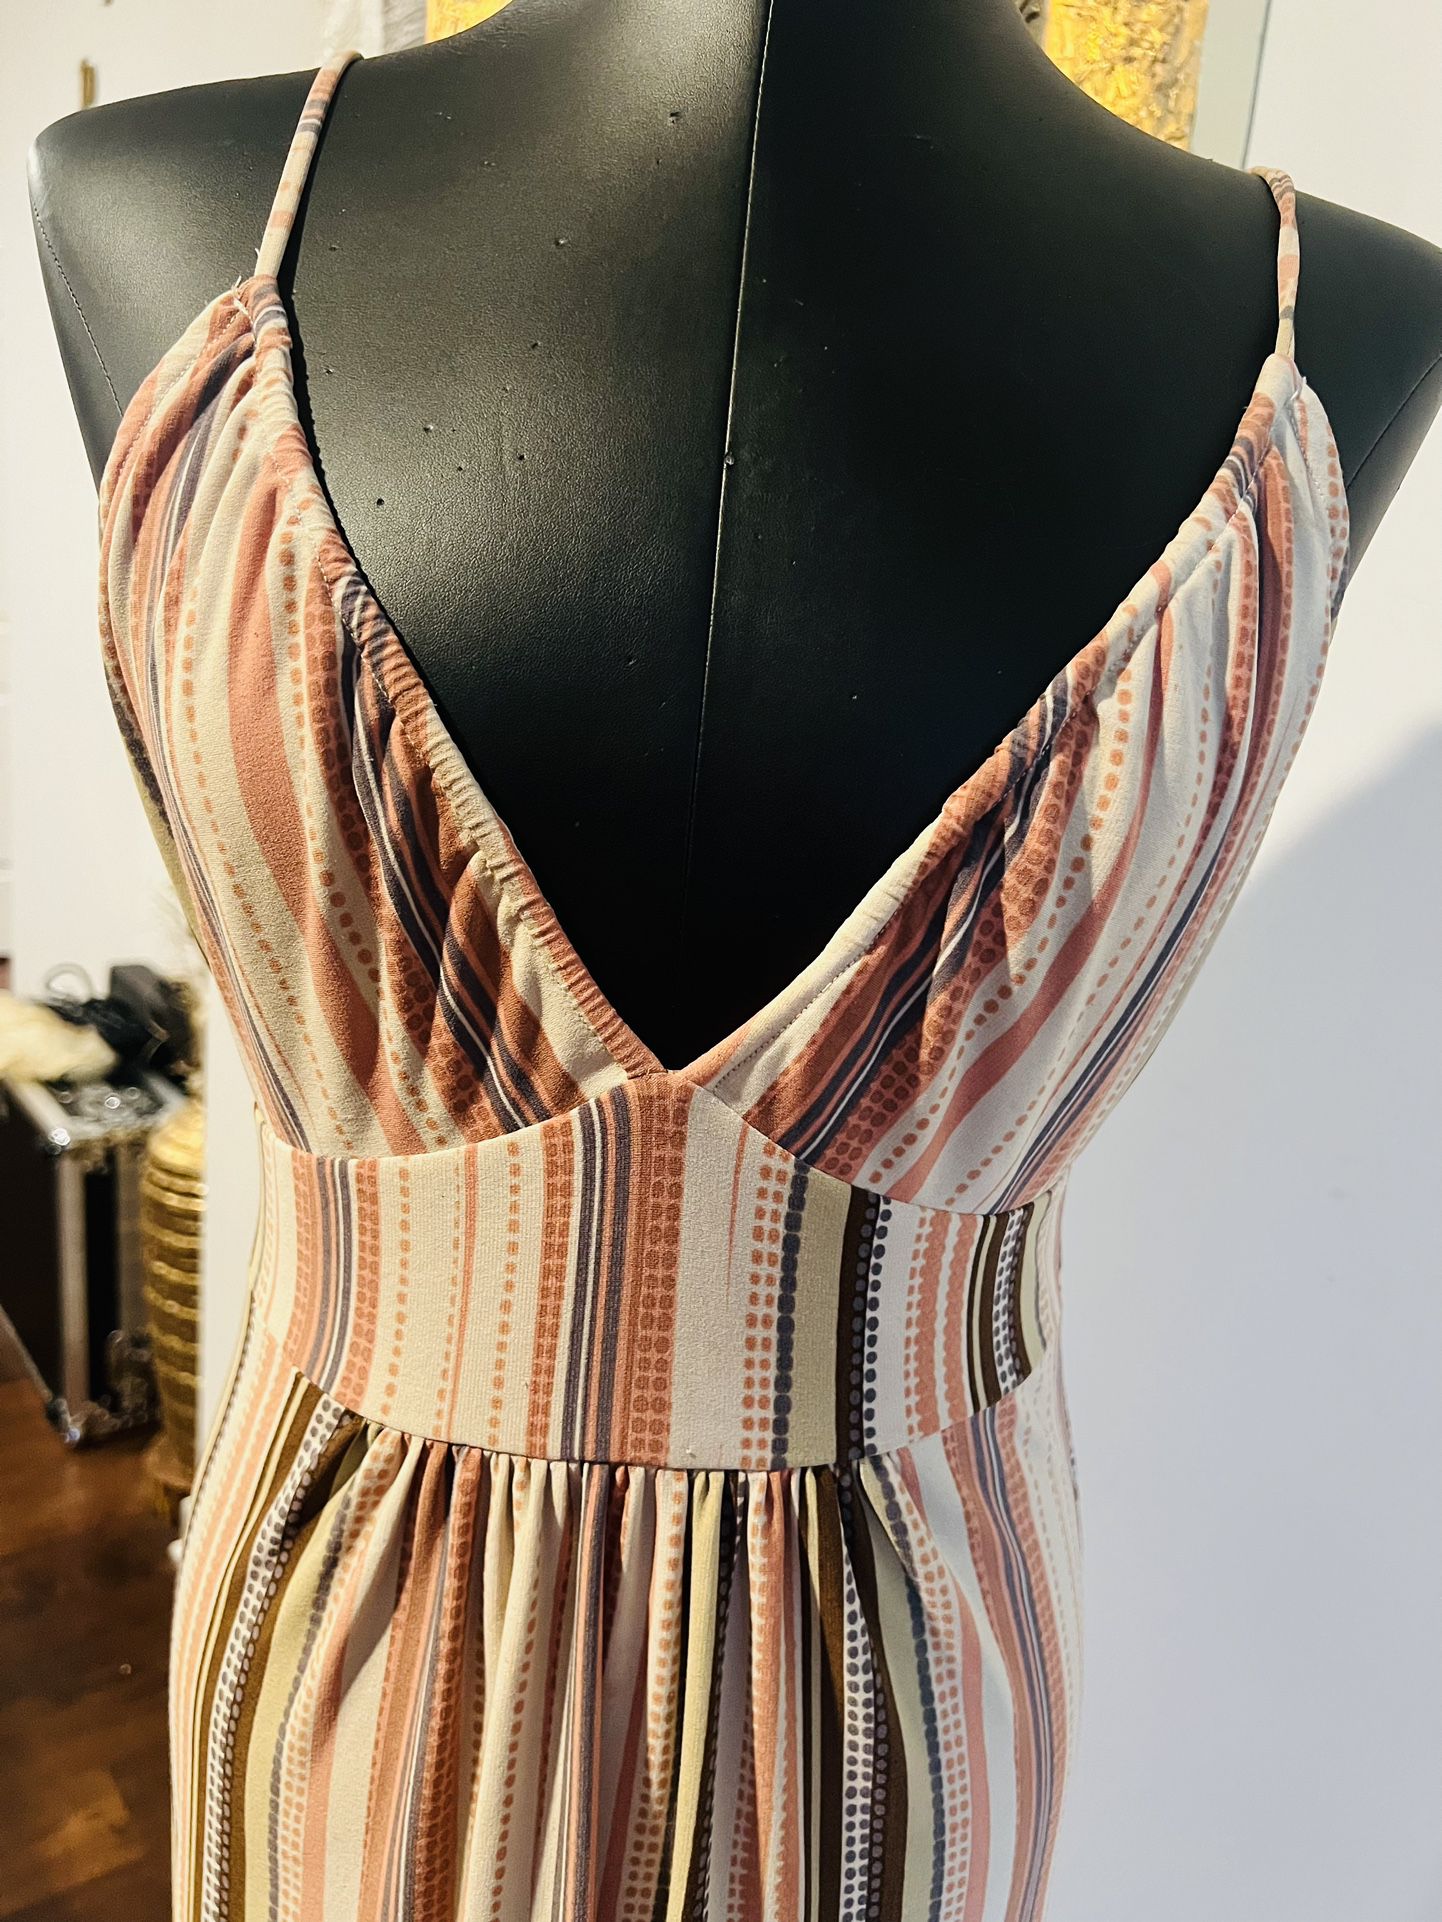 Stripe Maxi Dress